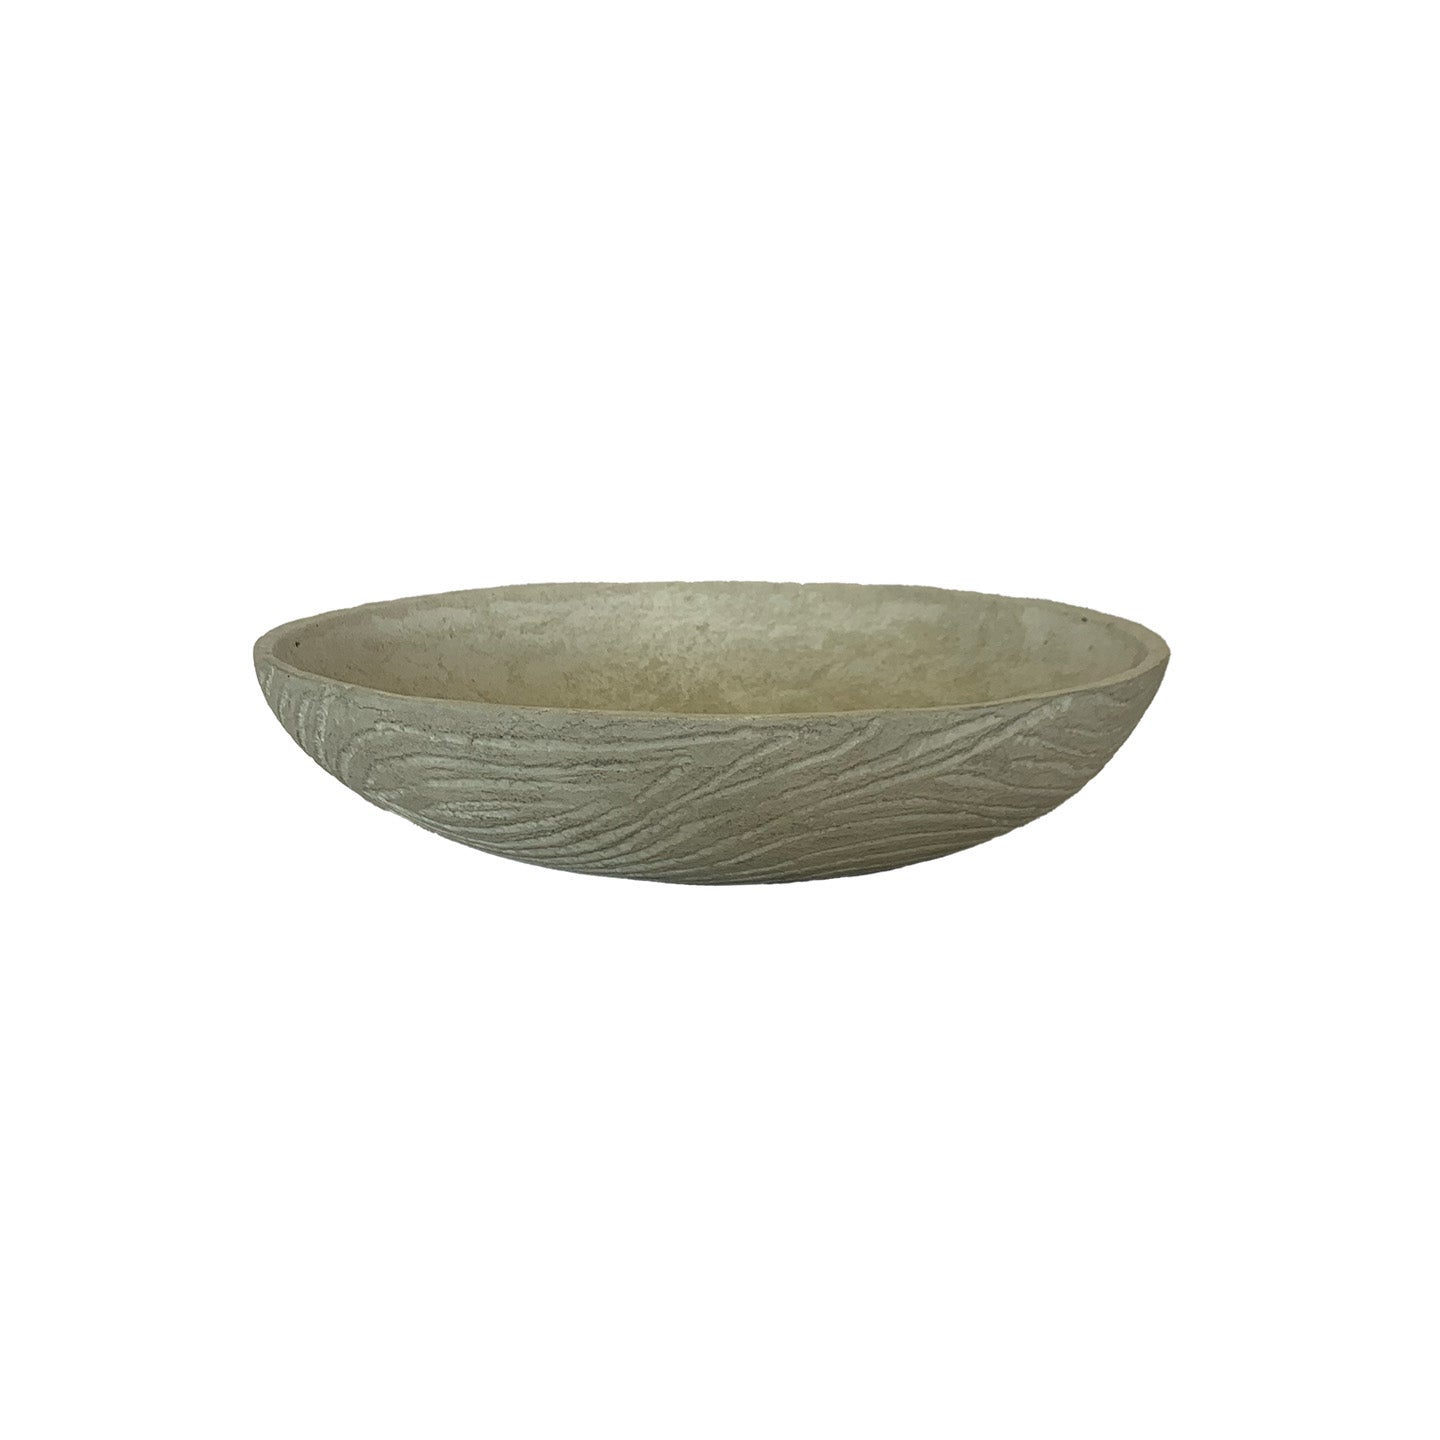 Ivory Concrete Wood Grain Bowl